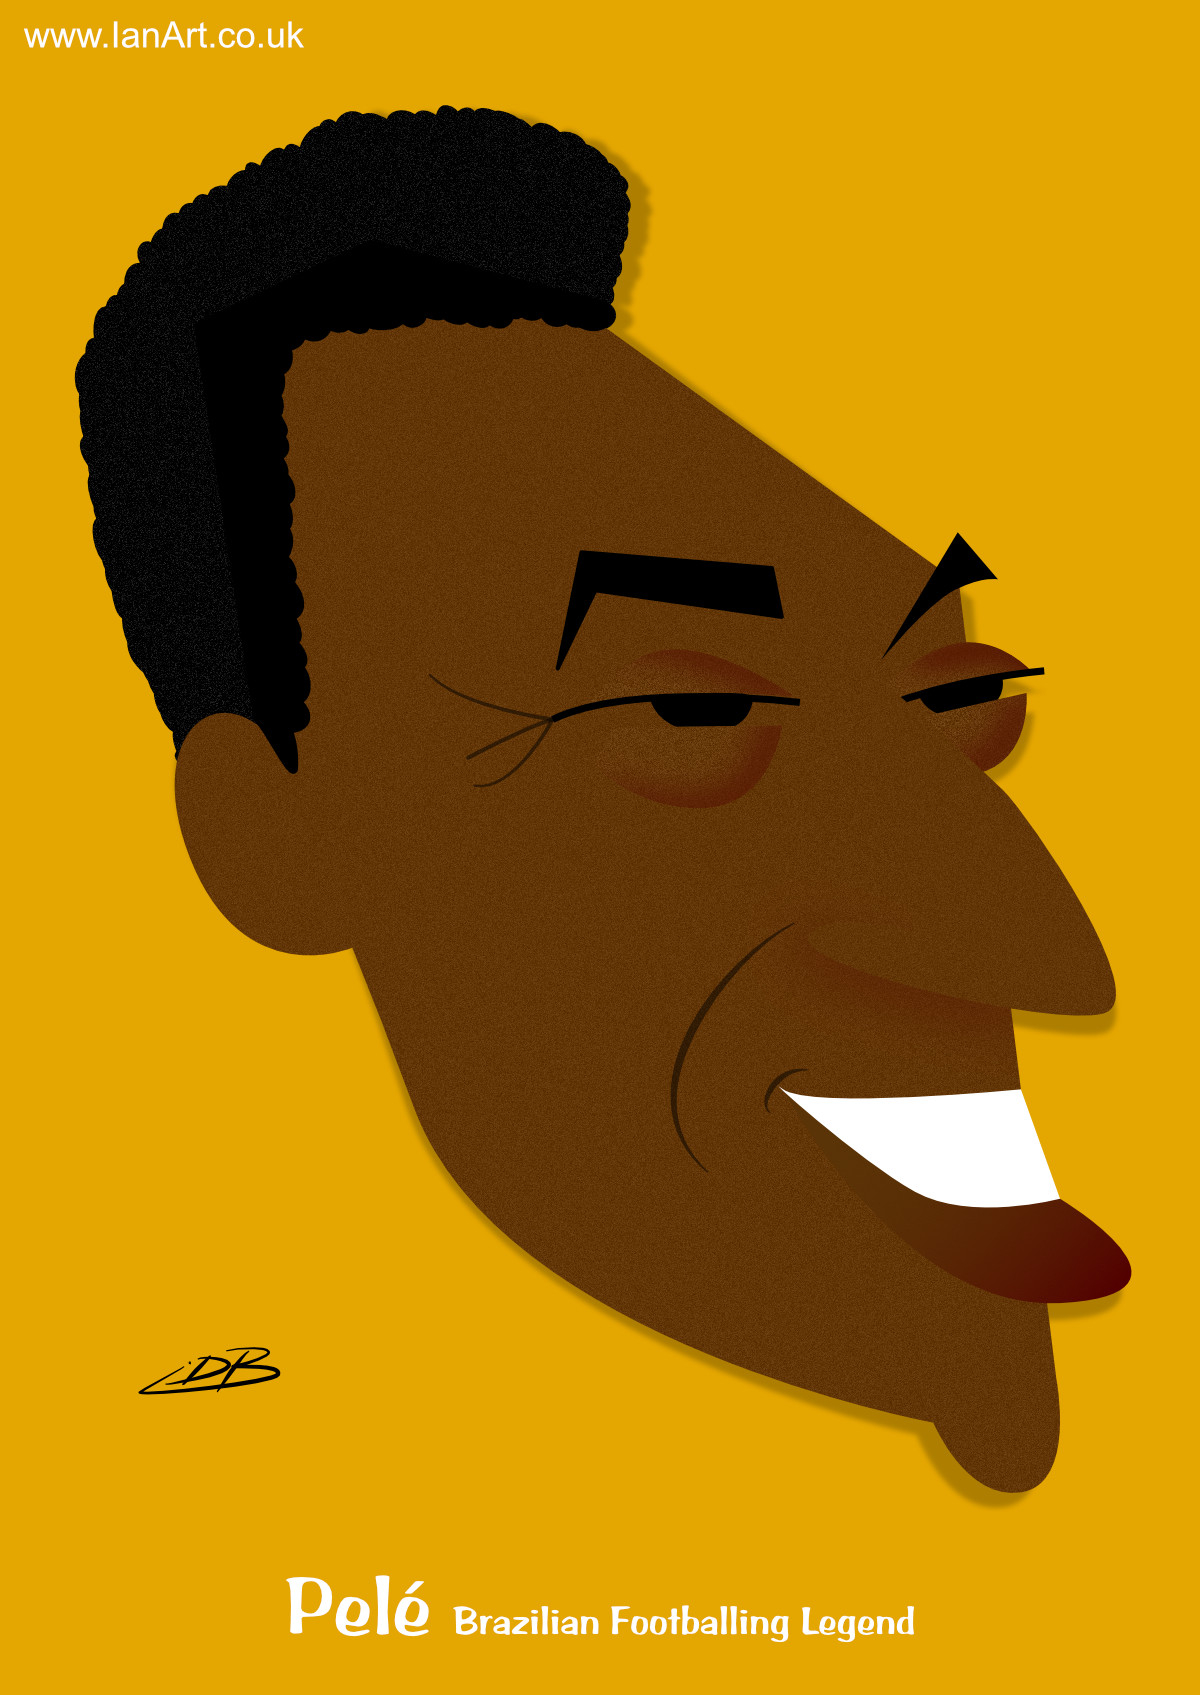 Pele-Brazilian-Footballing-Legend-o-rei-caricature-cartoon.jpg